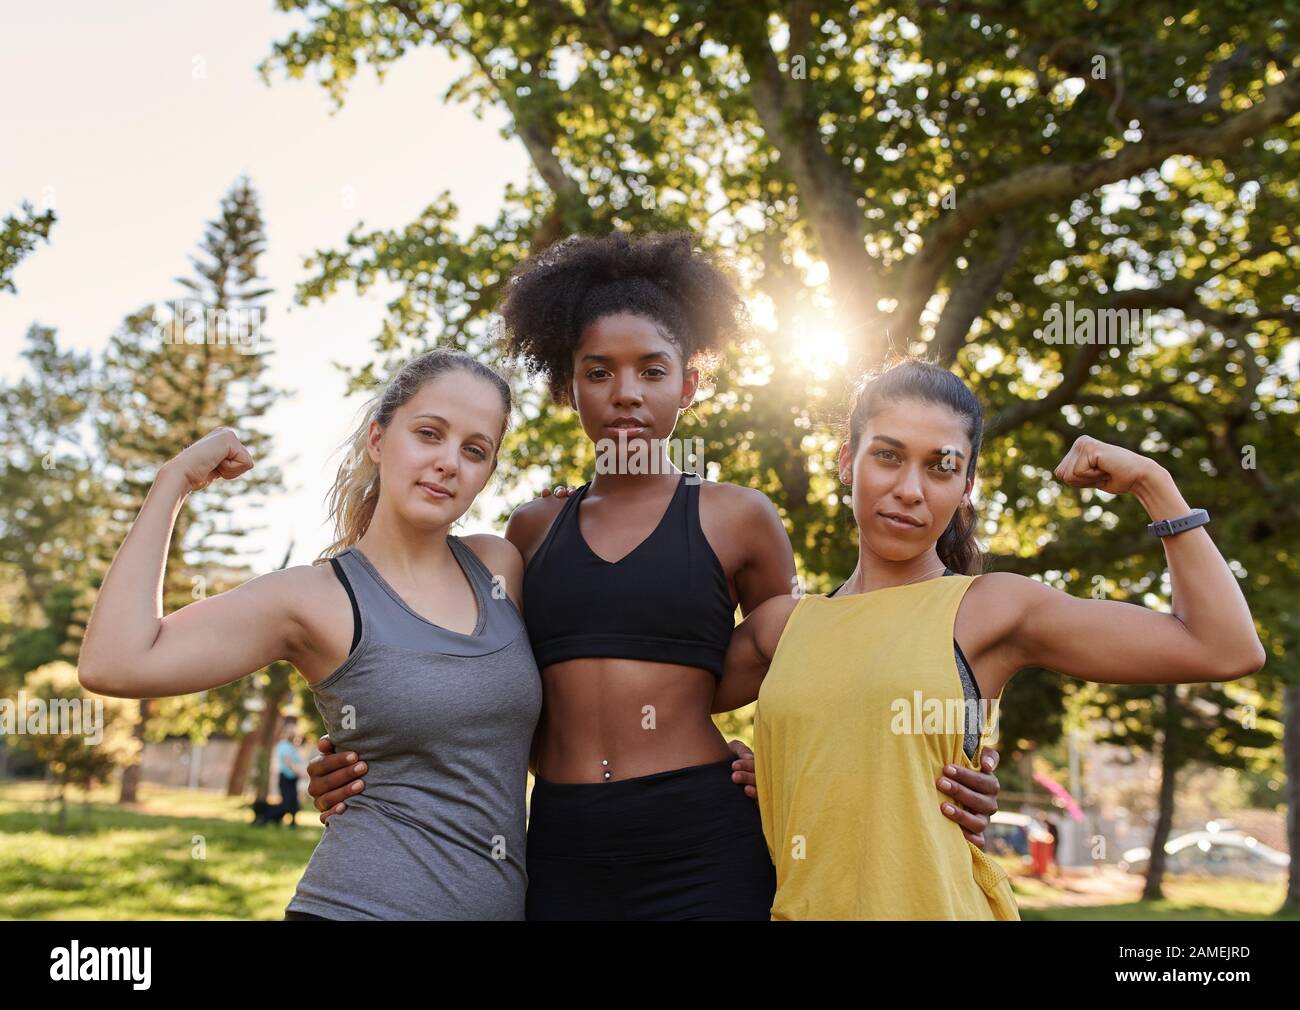 Sportlich gesunde junge multiethnische Frauenfreunde, die ihre Muskel mit Blick auf die Kamera im Park biegen - starke Frau, die weibliche Macht zeigt Stockfoto